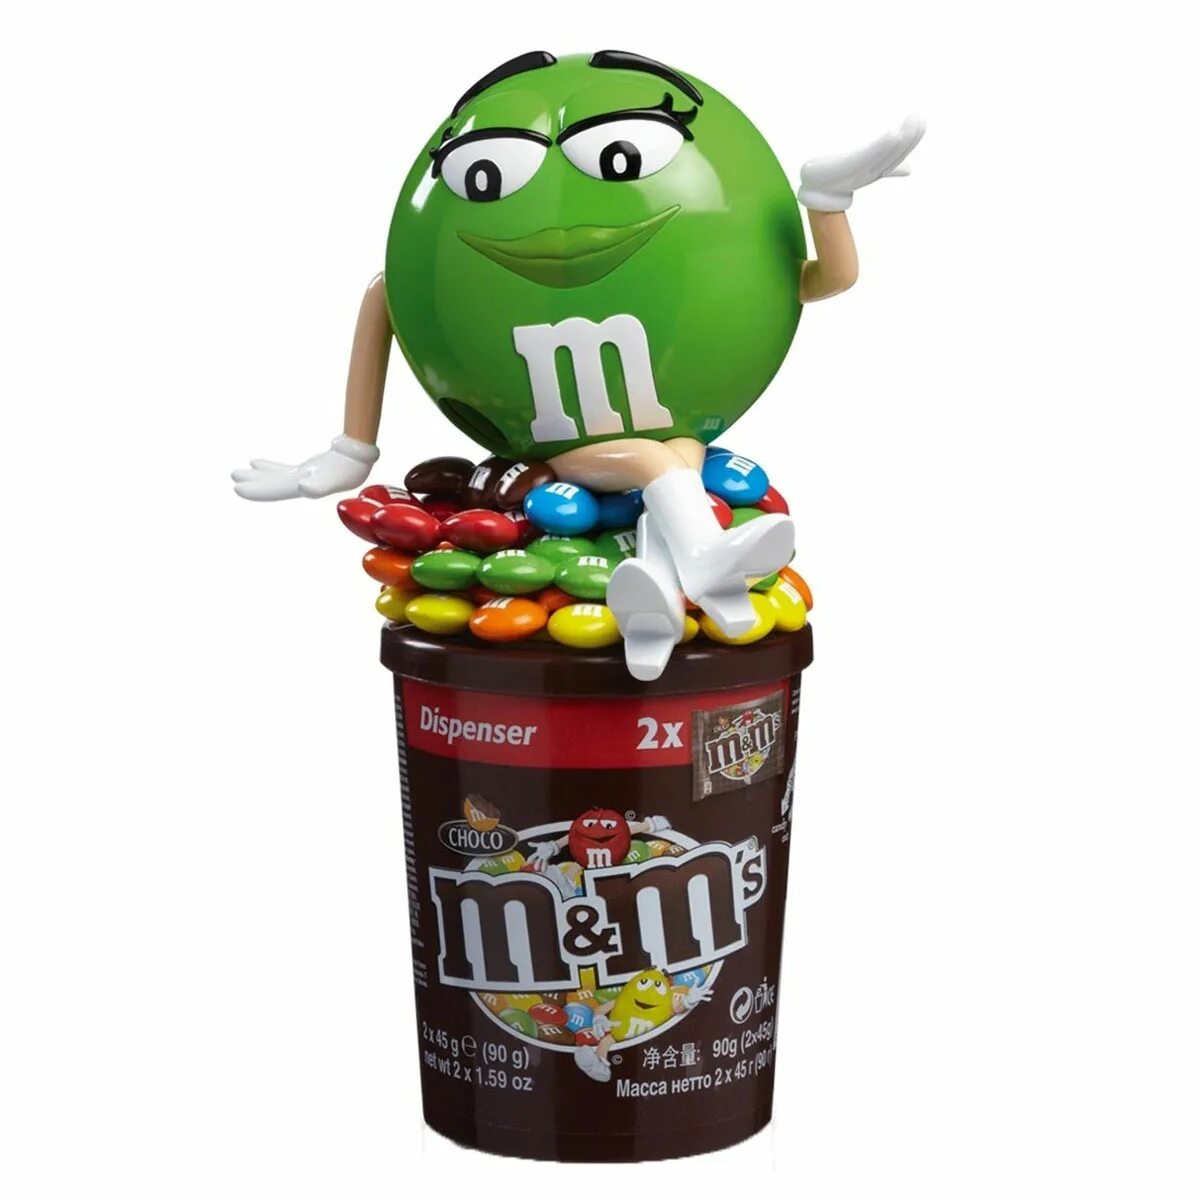 М m. Диспенсер зеленый m&MS. Игрушка м м's диспенсер. M&MS диспенсер красный. М&М Candy Dispenser драже с игр. (Диспенсер для конфет) 90гр*6шт (пал32) Марс.